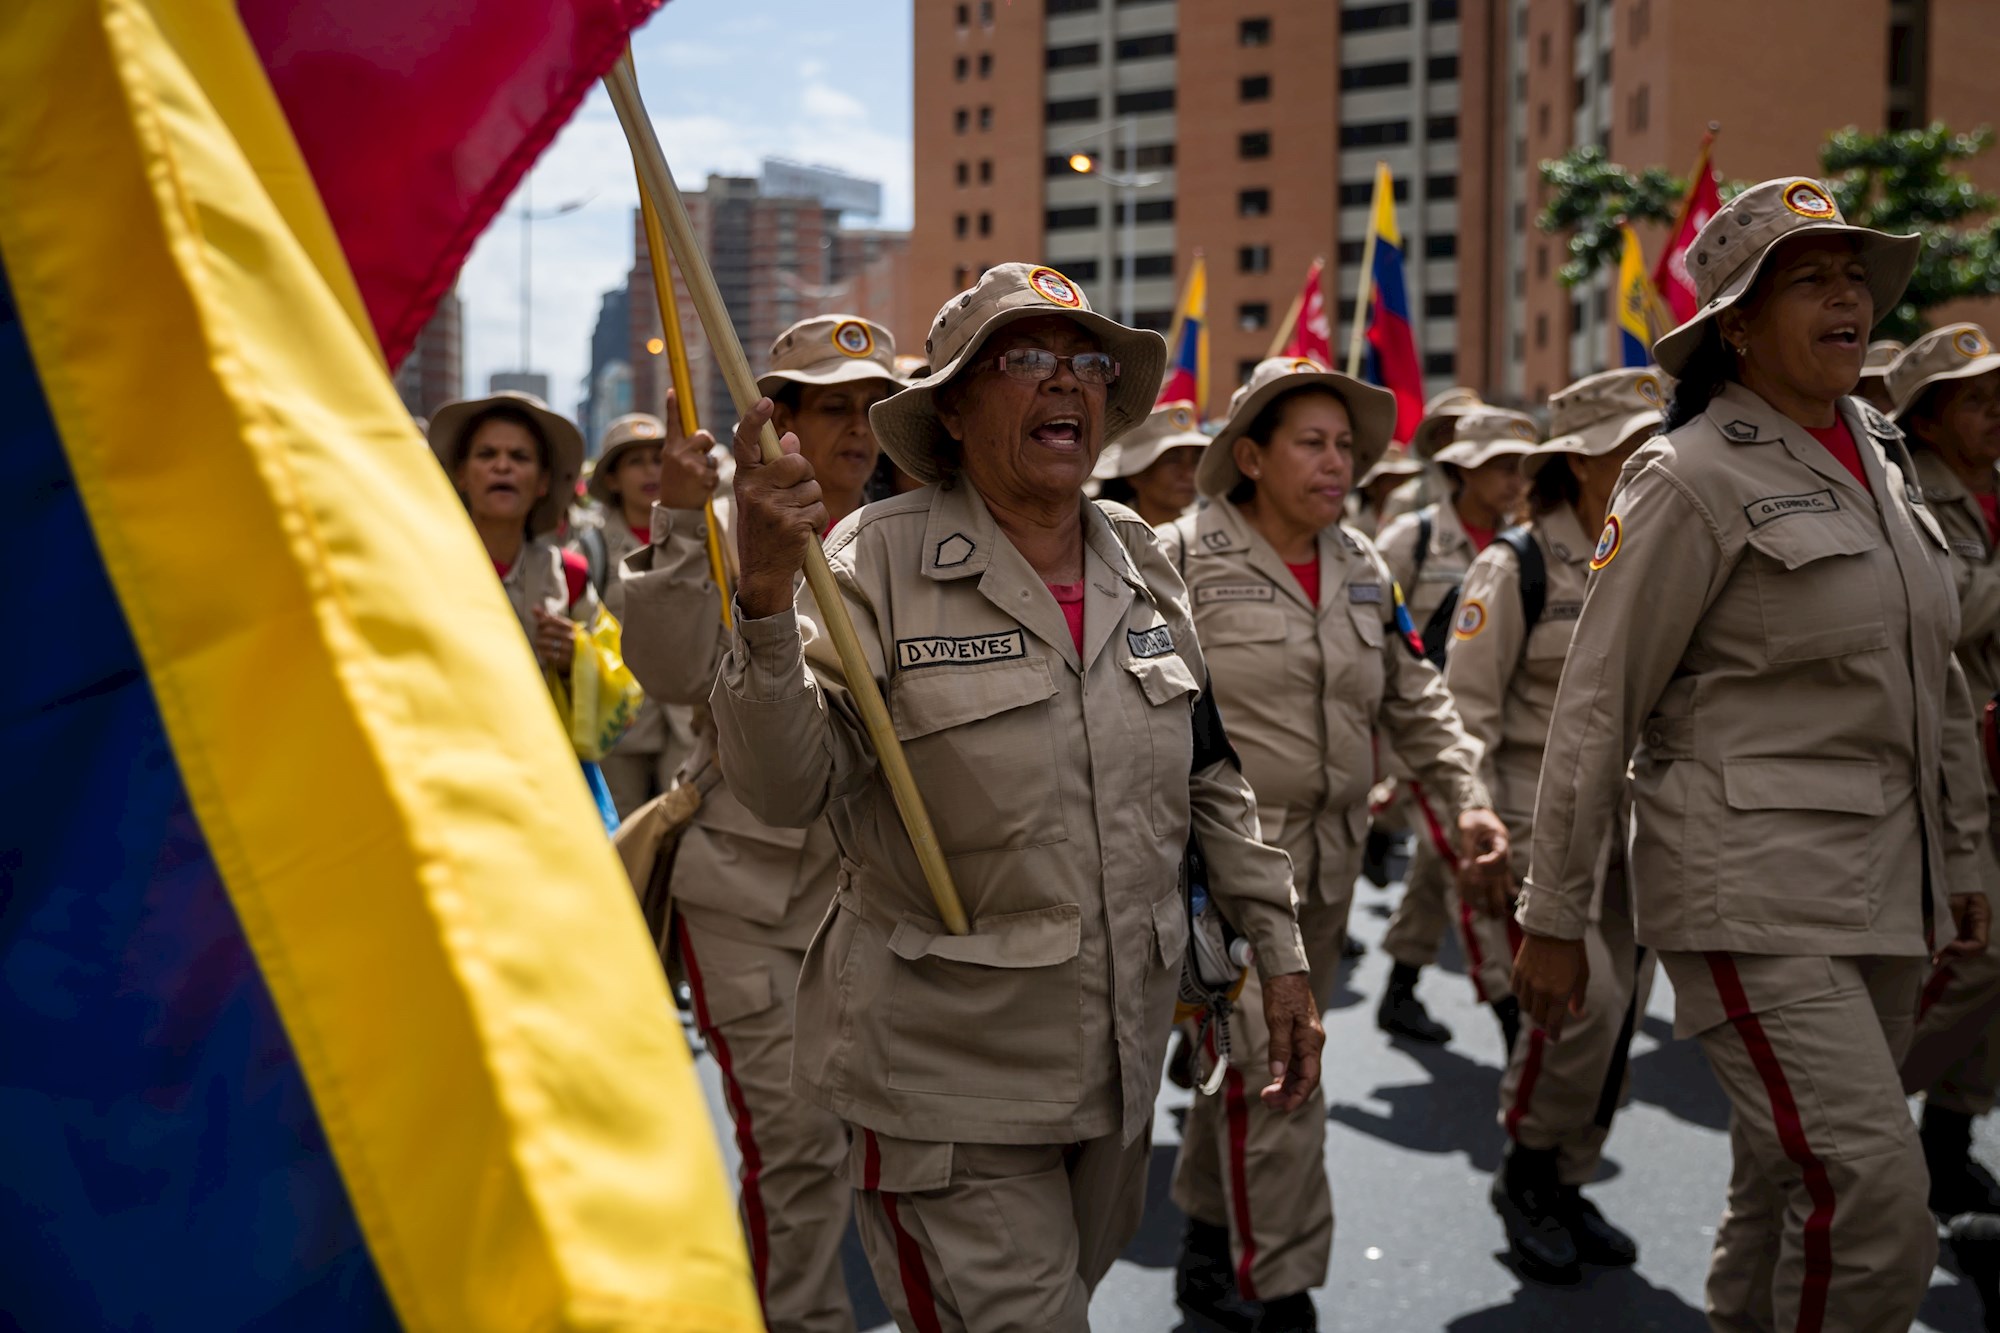 Maduro enviará mil milicianos a Apure, zona en conflicto fronterizo con la guerrilla